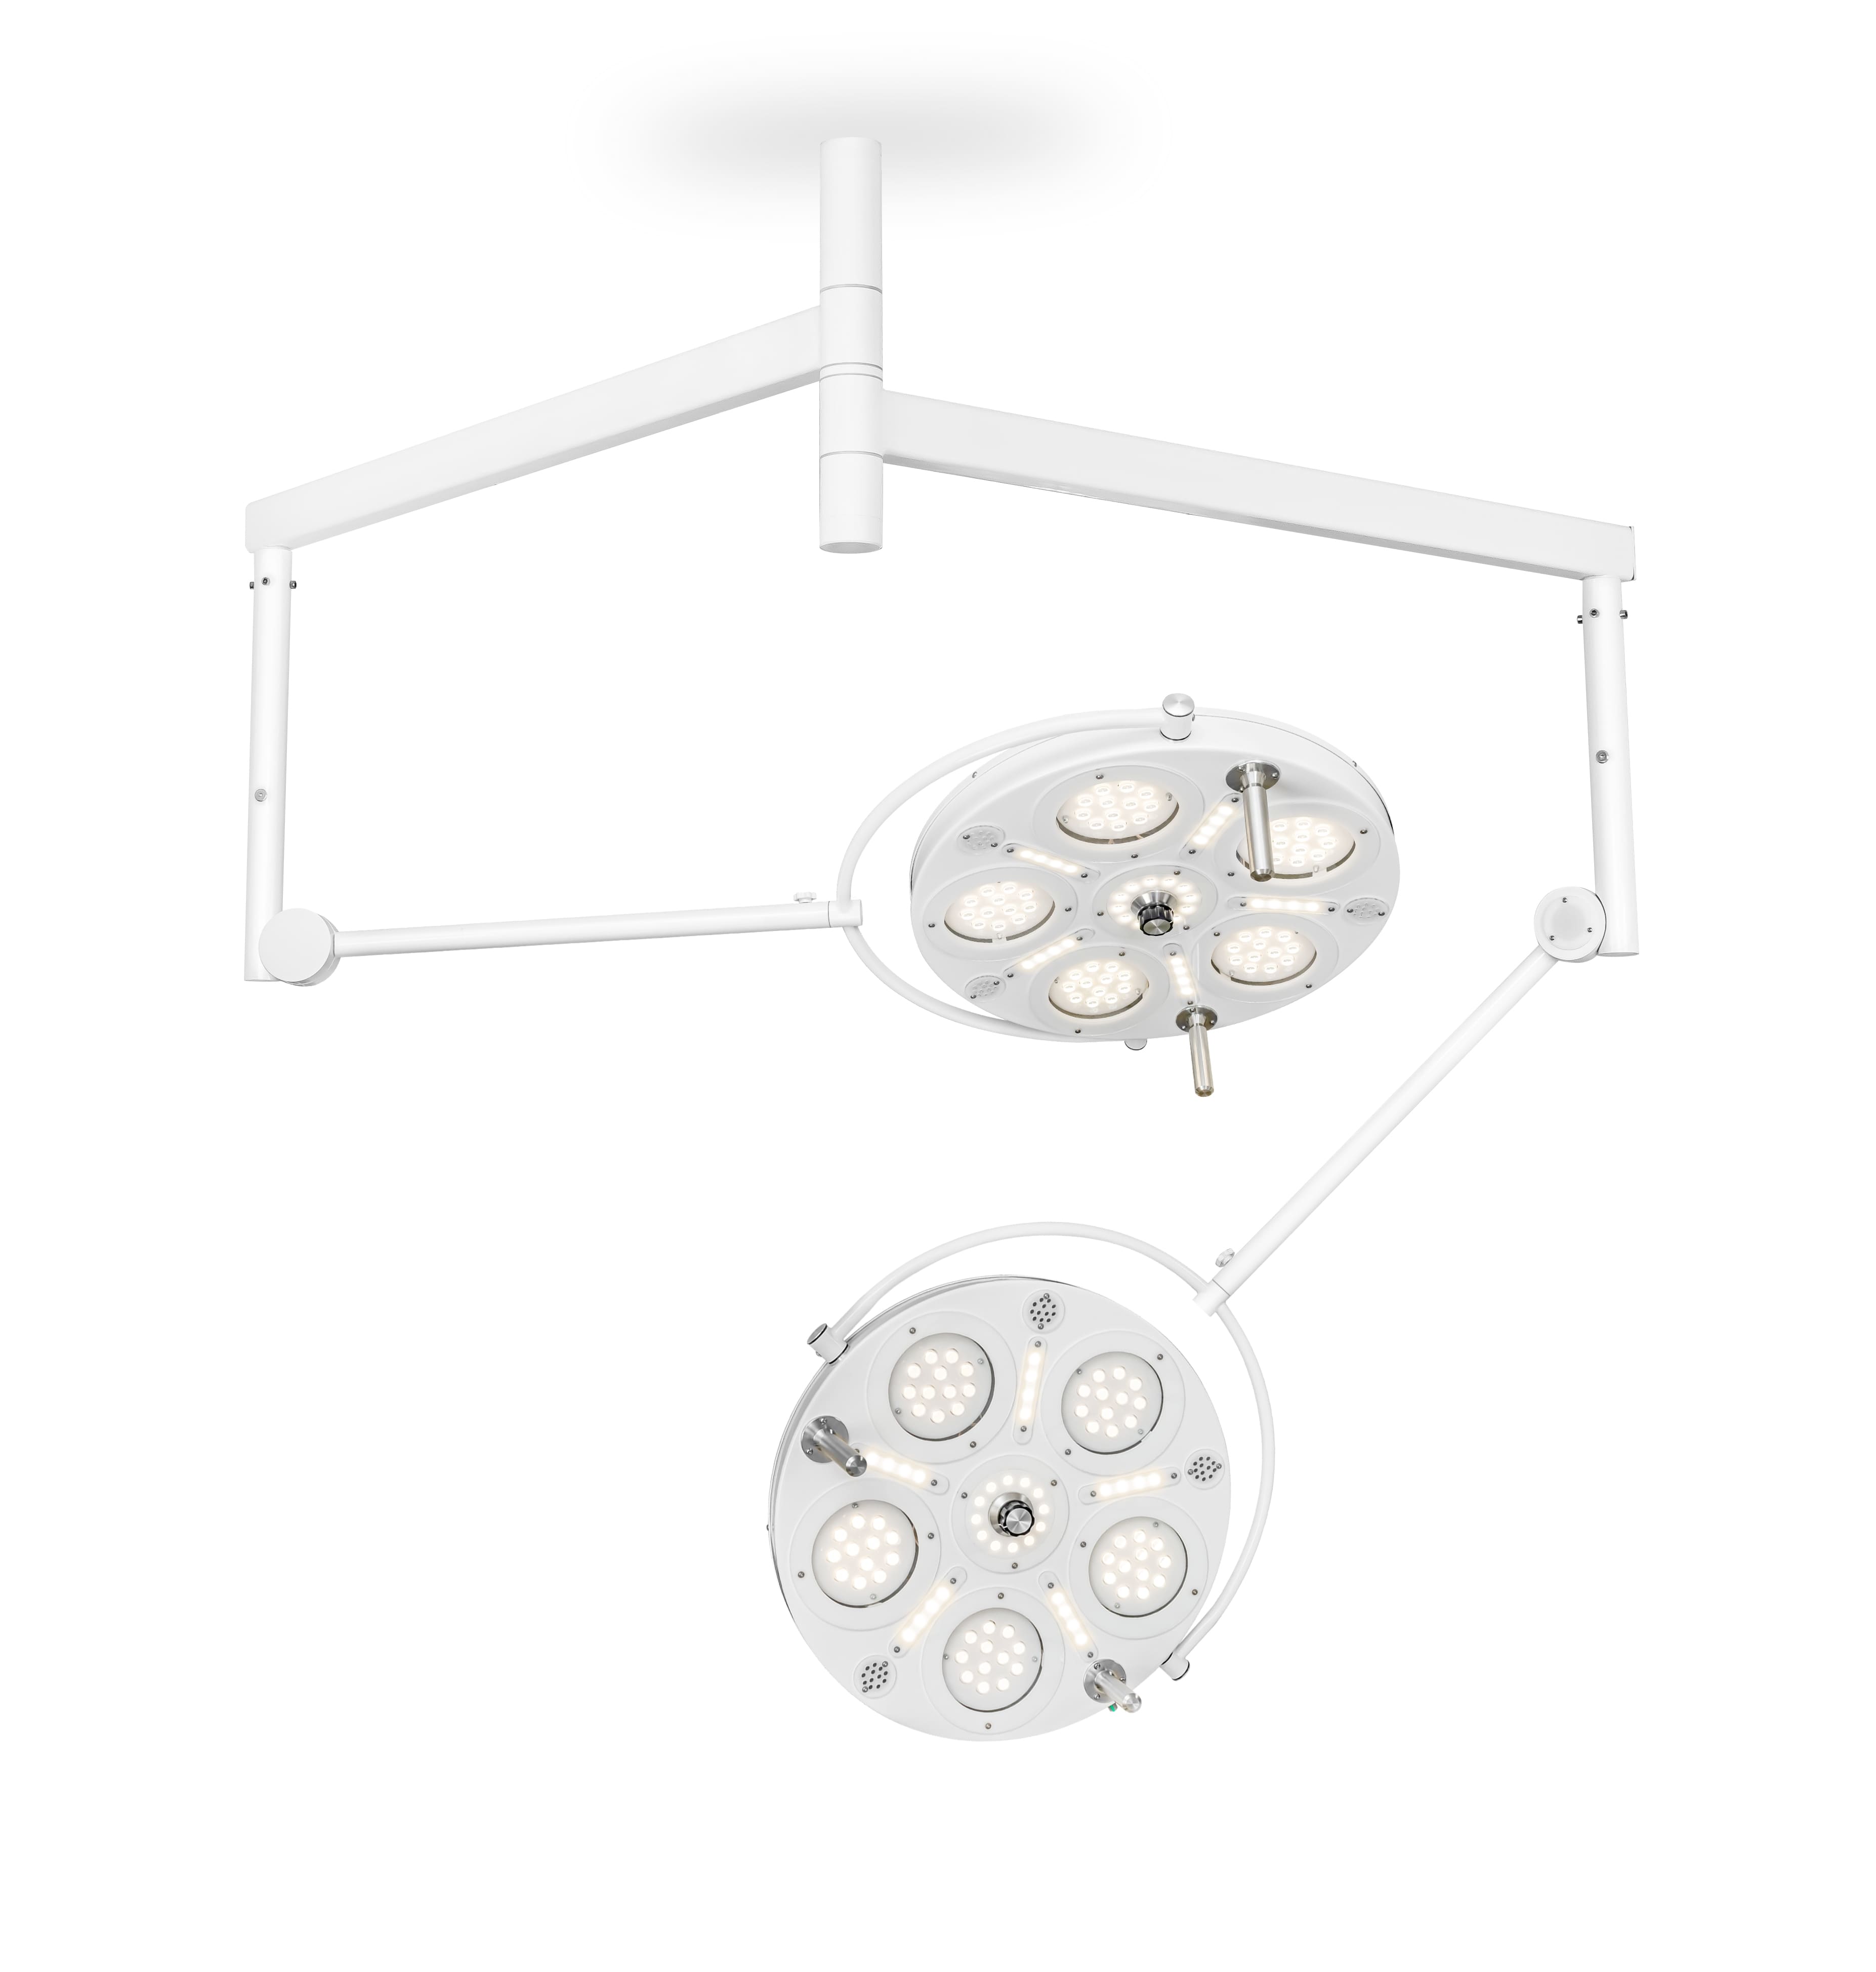 Медицинский двухкупольный хирургический светильник «FotonFly 6S6S», потолочный подвес - FotonFly 6S6S